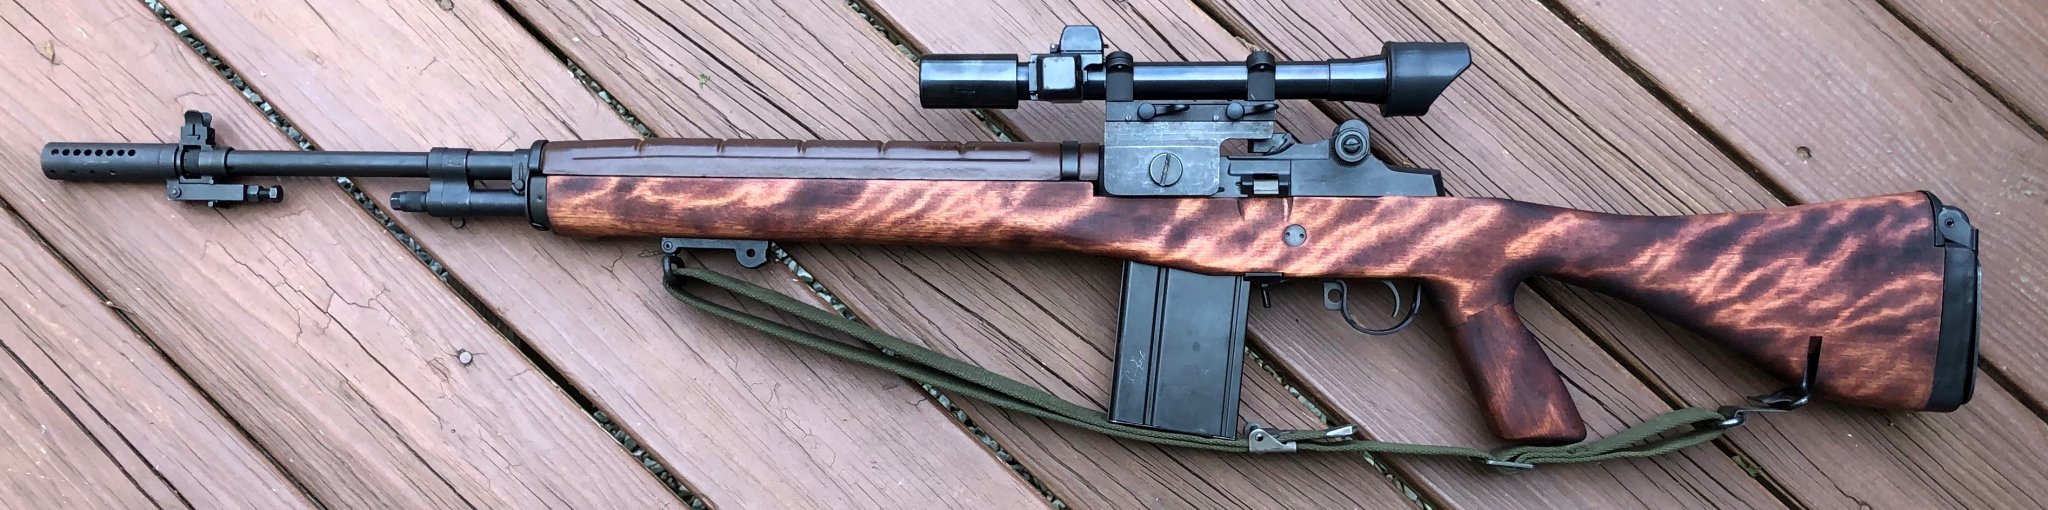 M14A1_Improvised_sniper_left1_v2.jpg